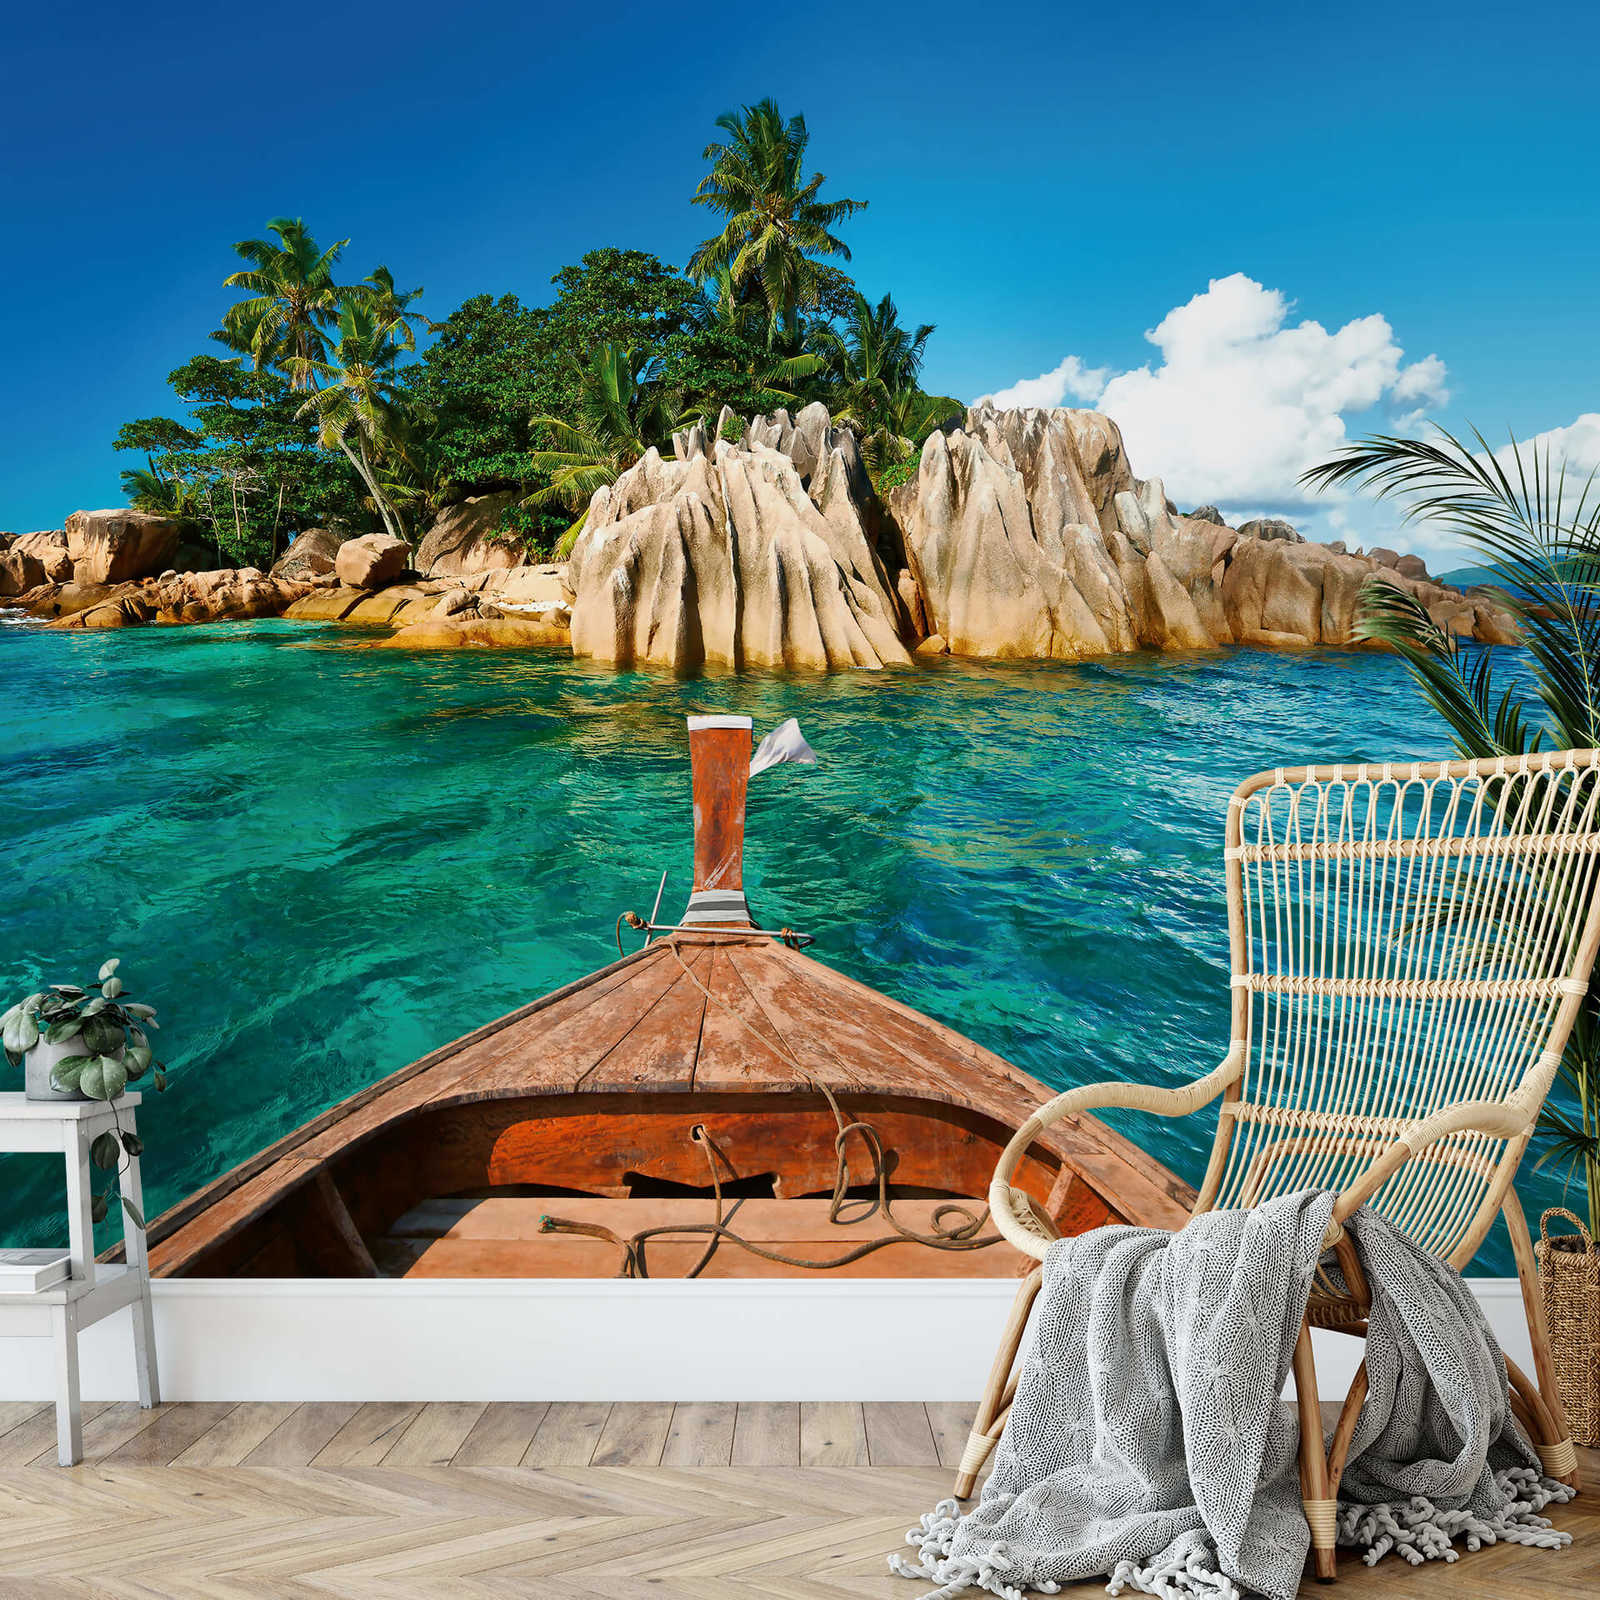             Papel Pintado Isla de Seychelles en el Mar - Azul, Marrón, Verde
        